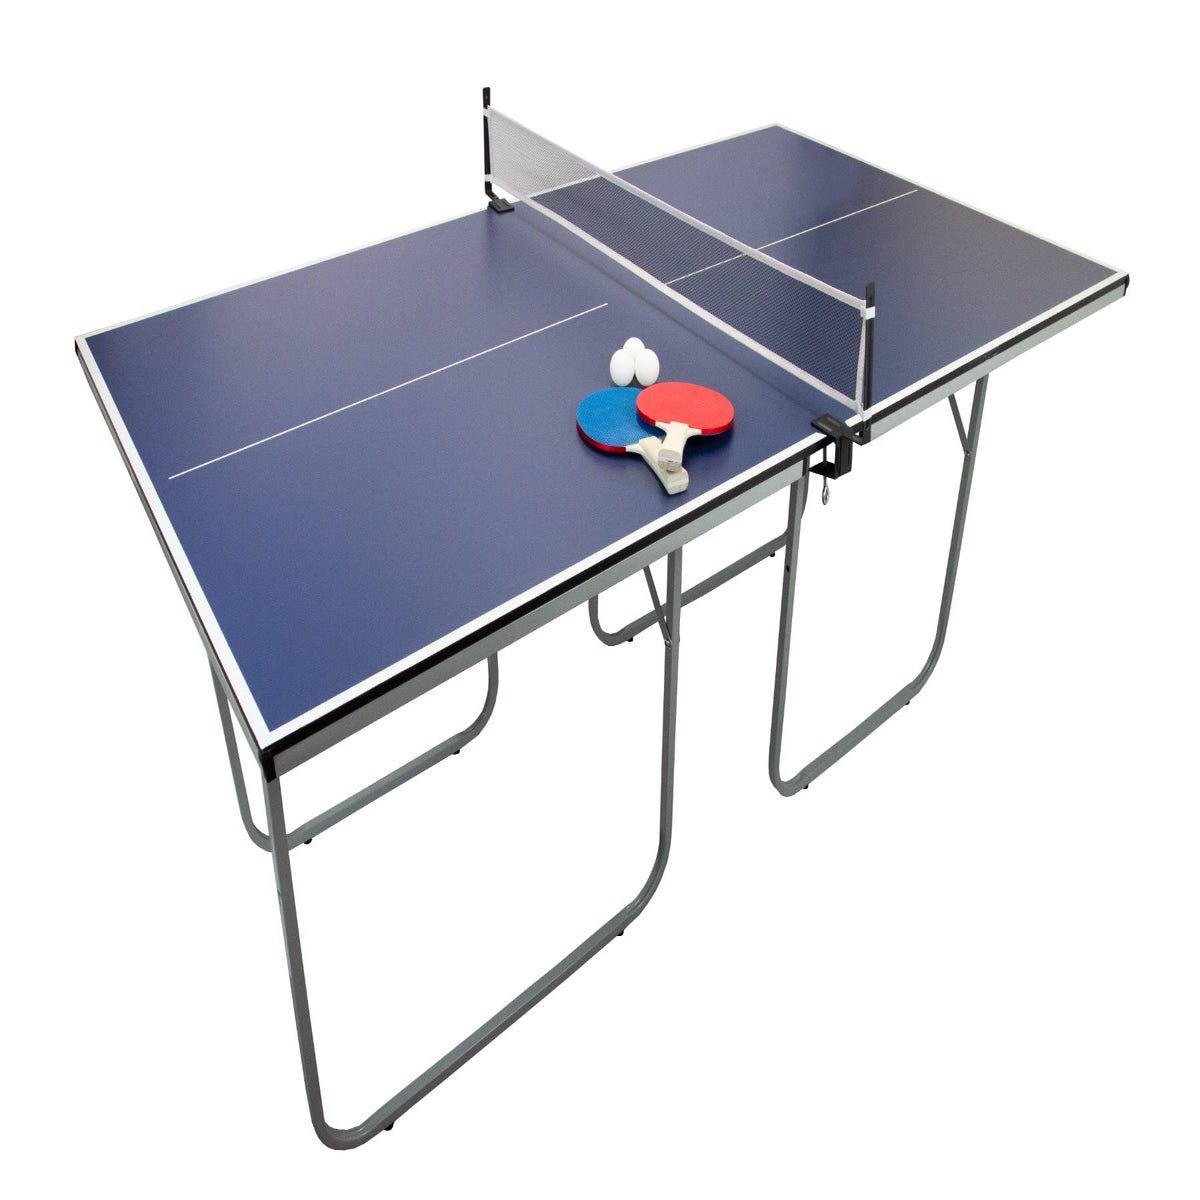 Comprar Pelotas de ping pong online